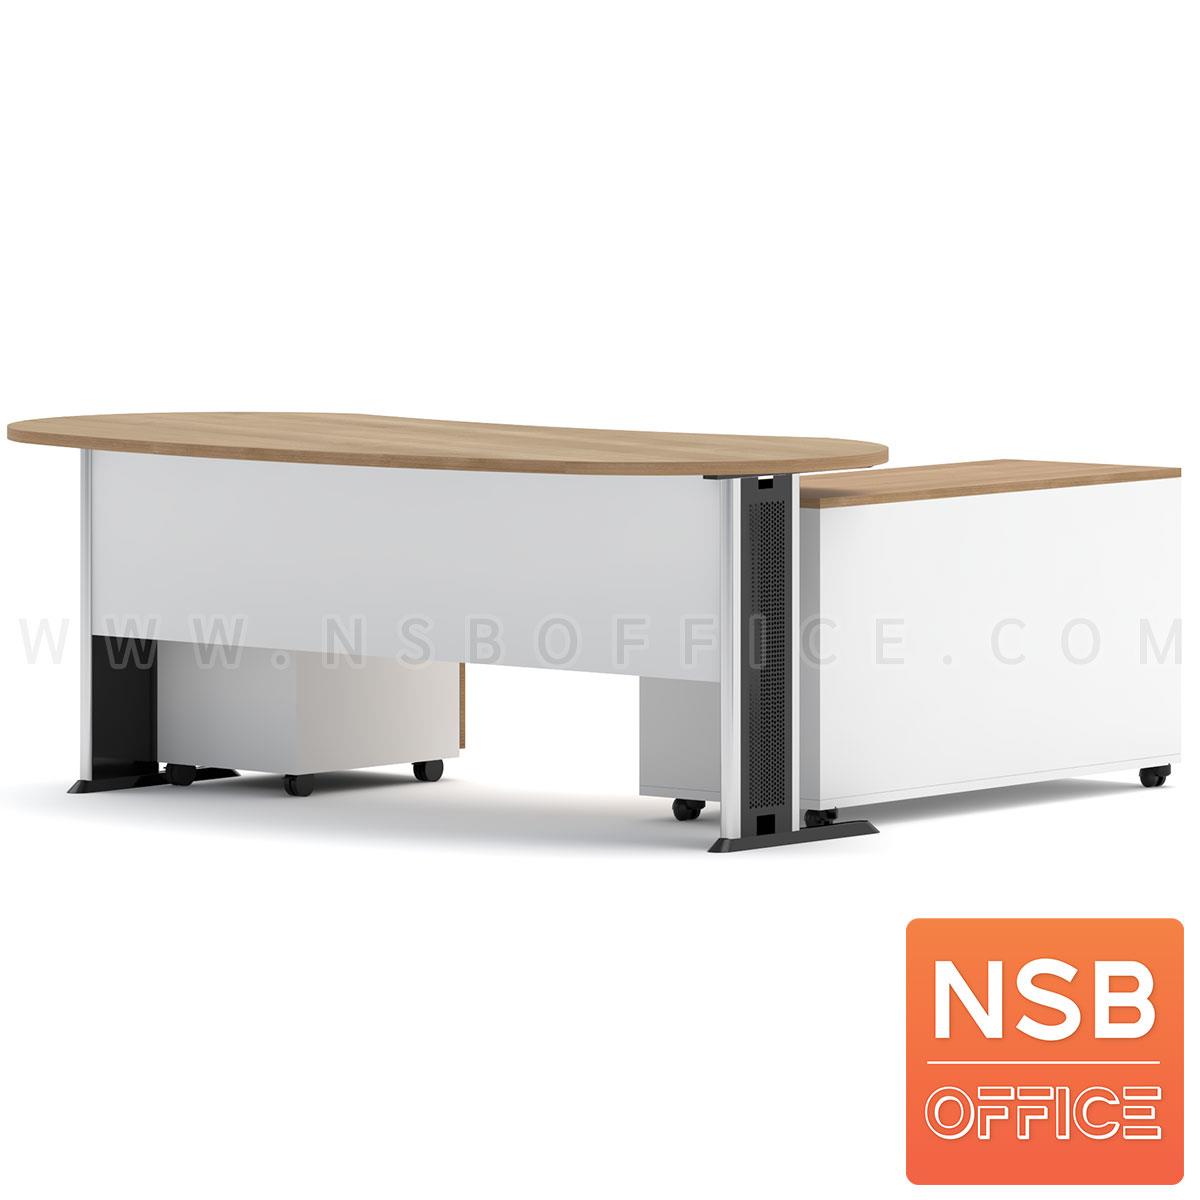 โต๊ะผู้บริหาร รุ่น Bersches (เบอร์เชส) ขนาด 200W cm. พร้อมตู้ข้างและลิ้นชักล้อเลื่อน